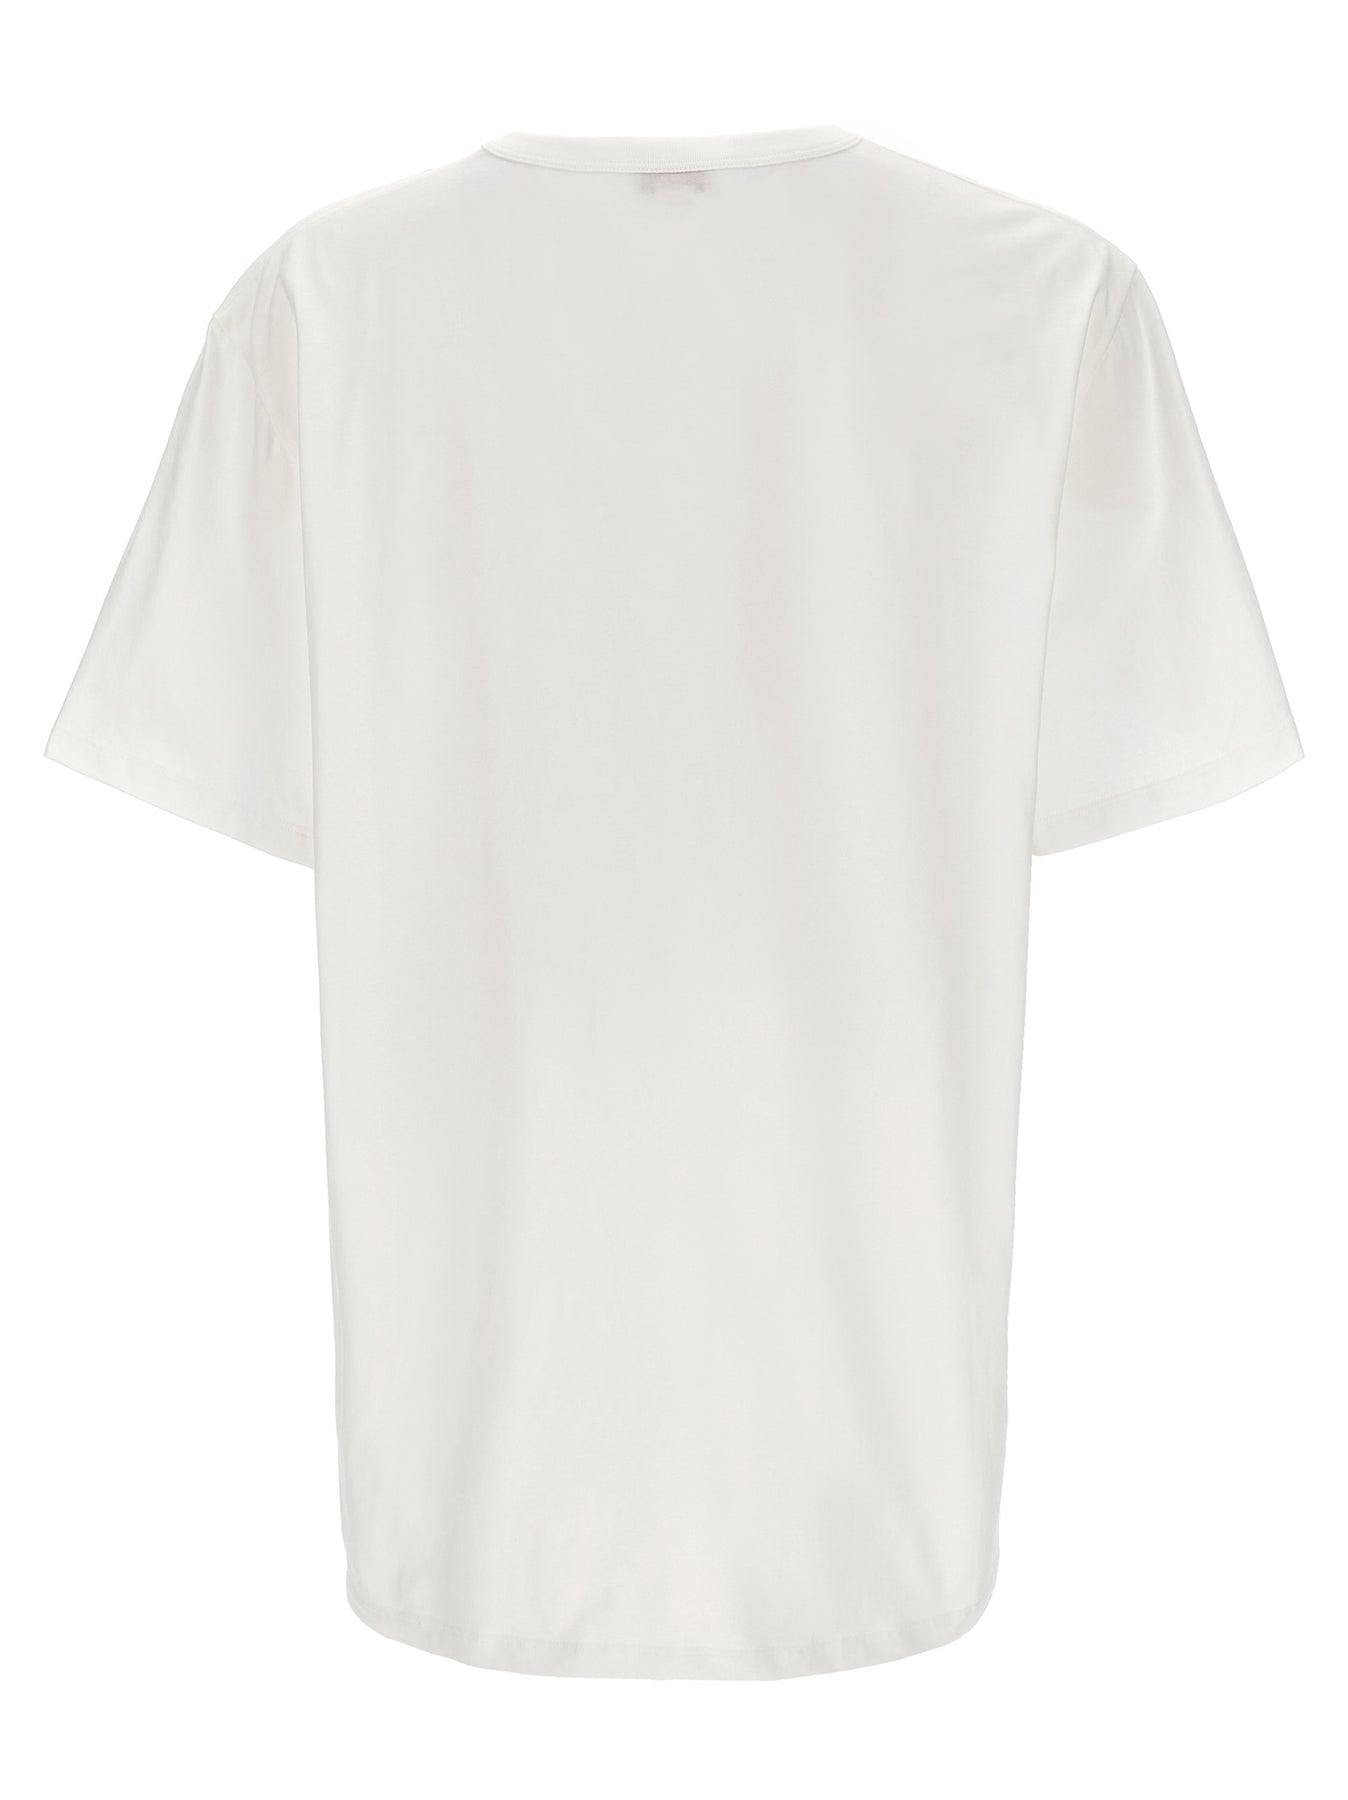 Shop Alexander Mcqueen Skull T-shirt White/black